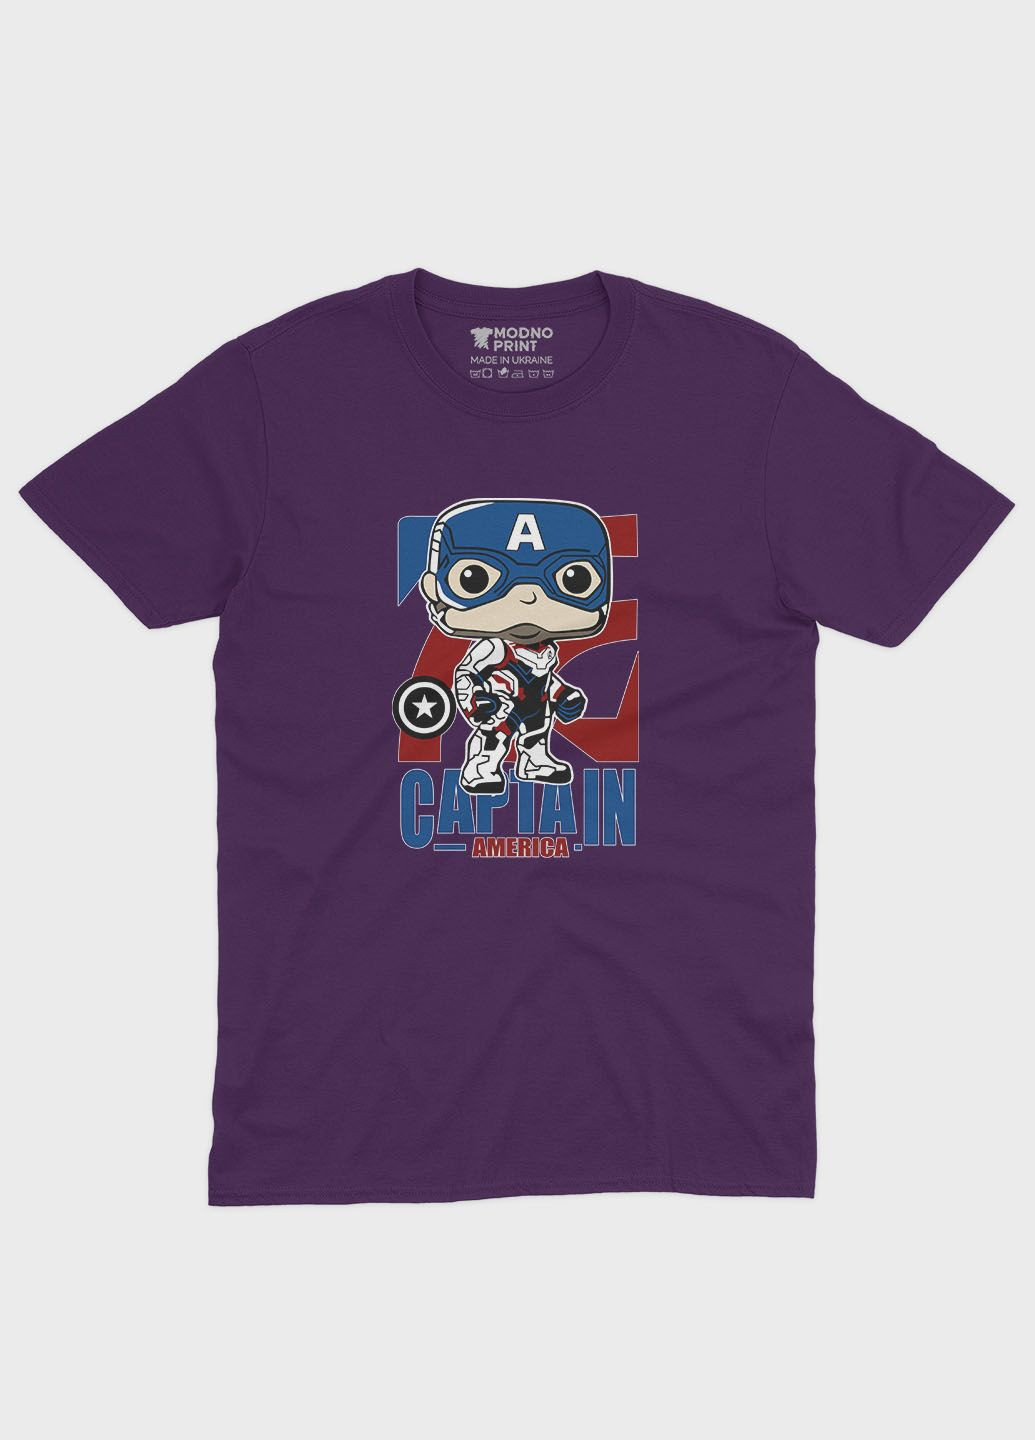 Фиолетовая демисезонная футболка для девочки с принтом супергероя - капитан америка (ts001-1-dby-006-022-007-g) Modno